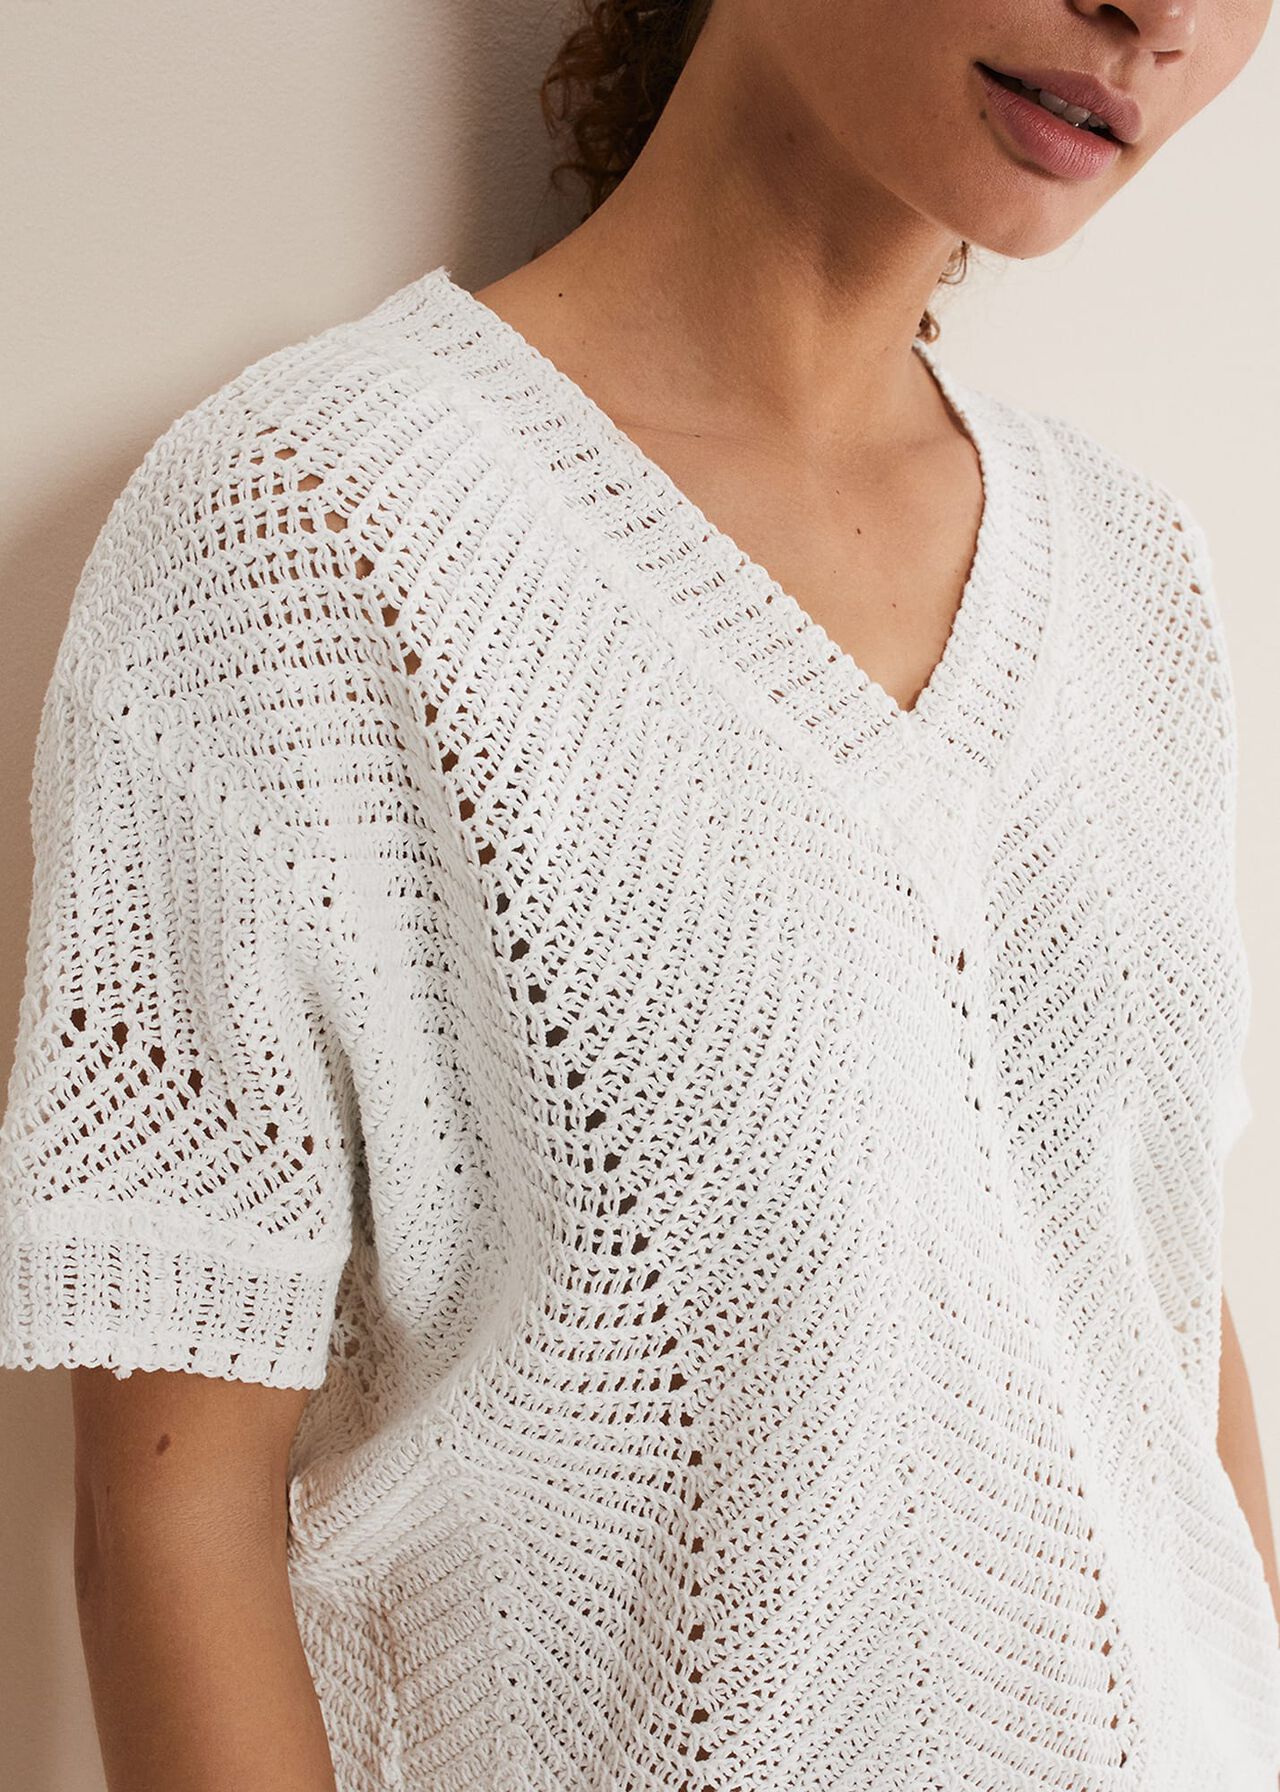 Avas Crochet Knit Top